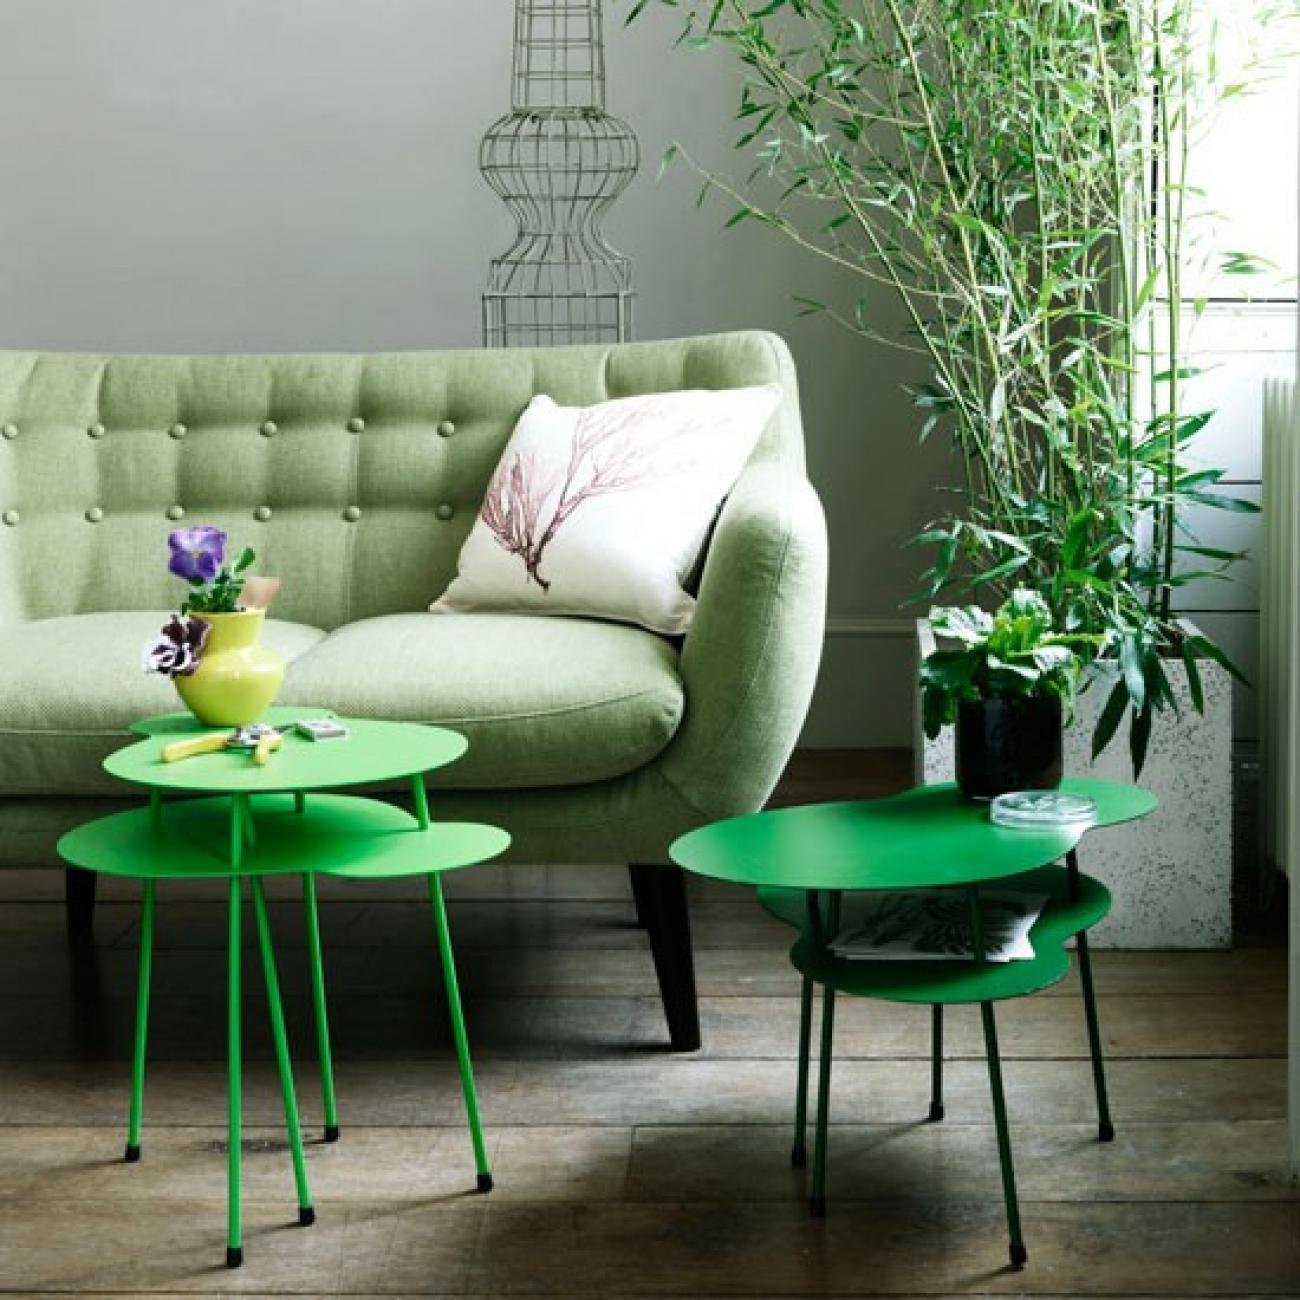 Сочетание серого и зеленого цвета. Салатовый диван в интерьере. Зеленый диван в интерьере. Зеленый цвет в интерьере. Интерьер в зеленых тонах.